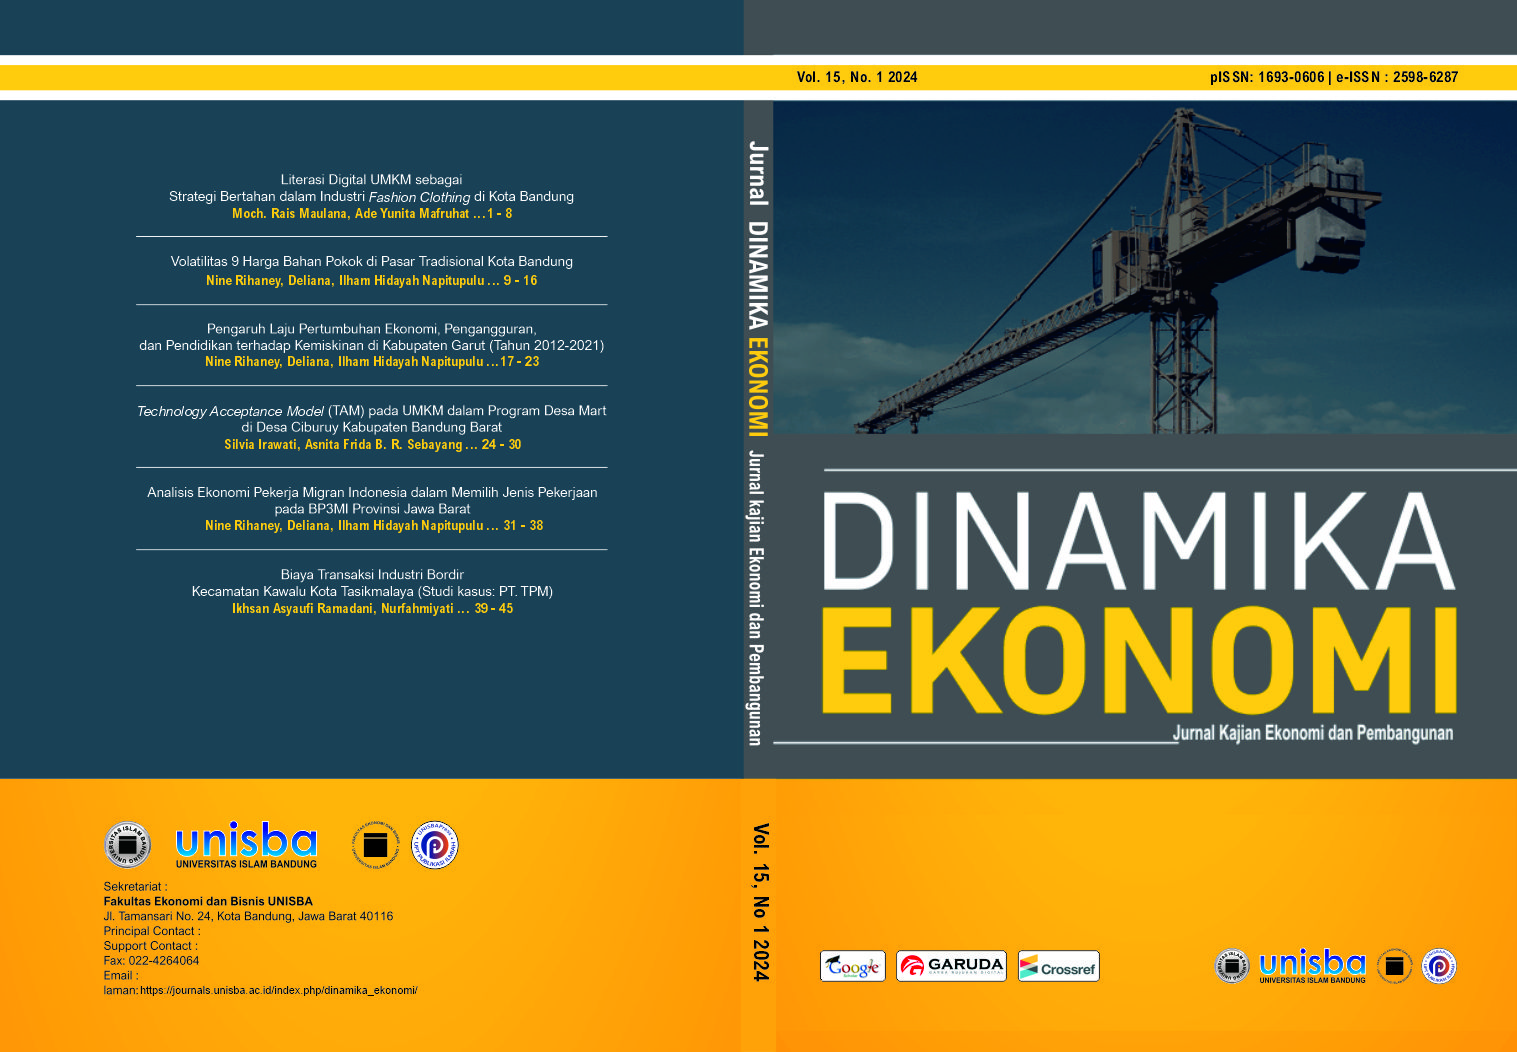 					View Vol 15, No 1 (2024): DINAMIKA EKONOMI : Jurnal Ekonomi dan Pembangunan
				